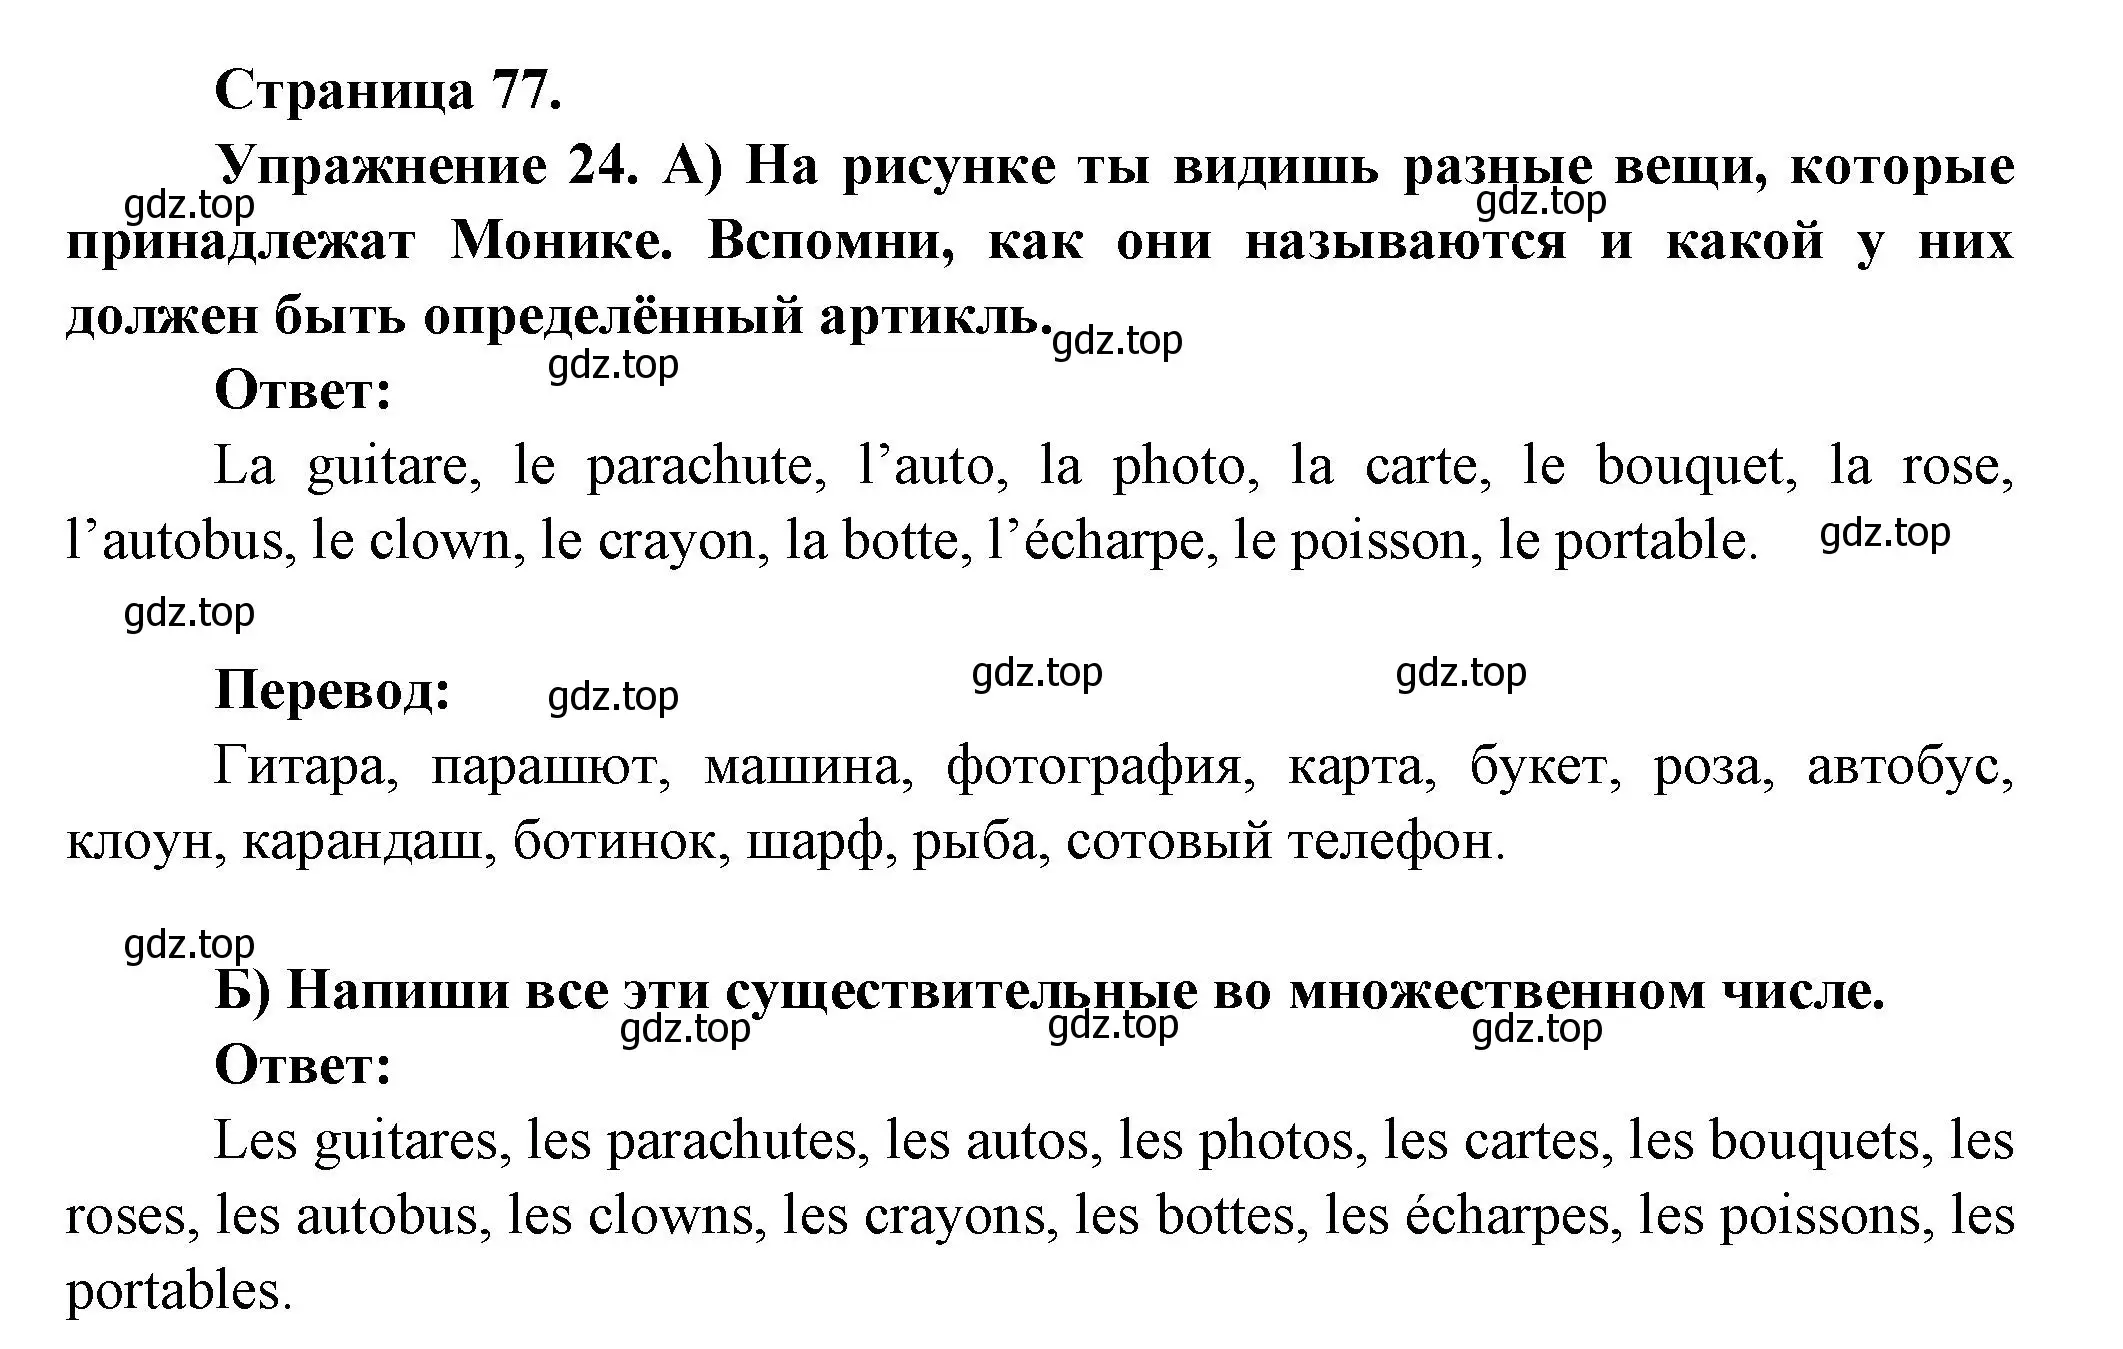 Решение номер 24 (страница 77) гдз по французскому языку 5 класс Береговская, Белосельская, учебник 1 часть